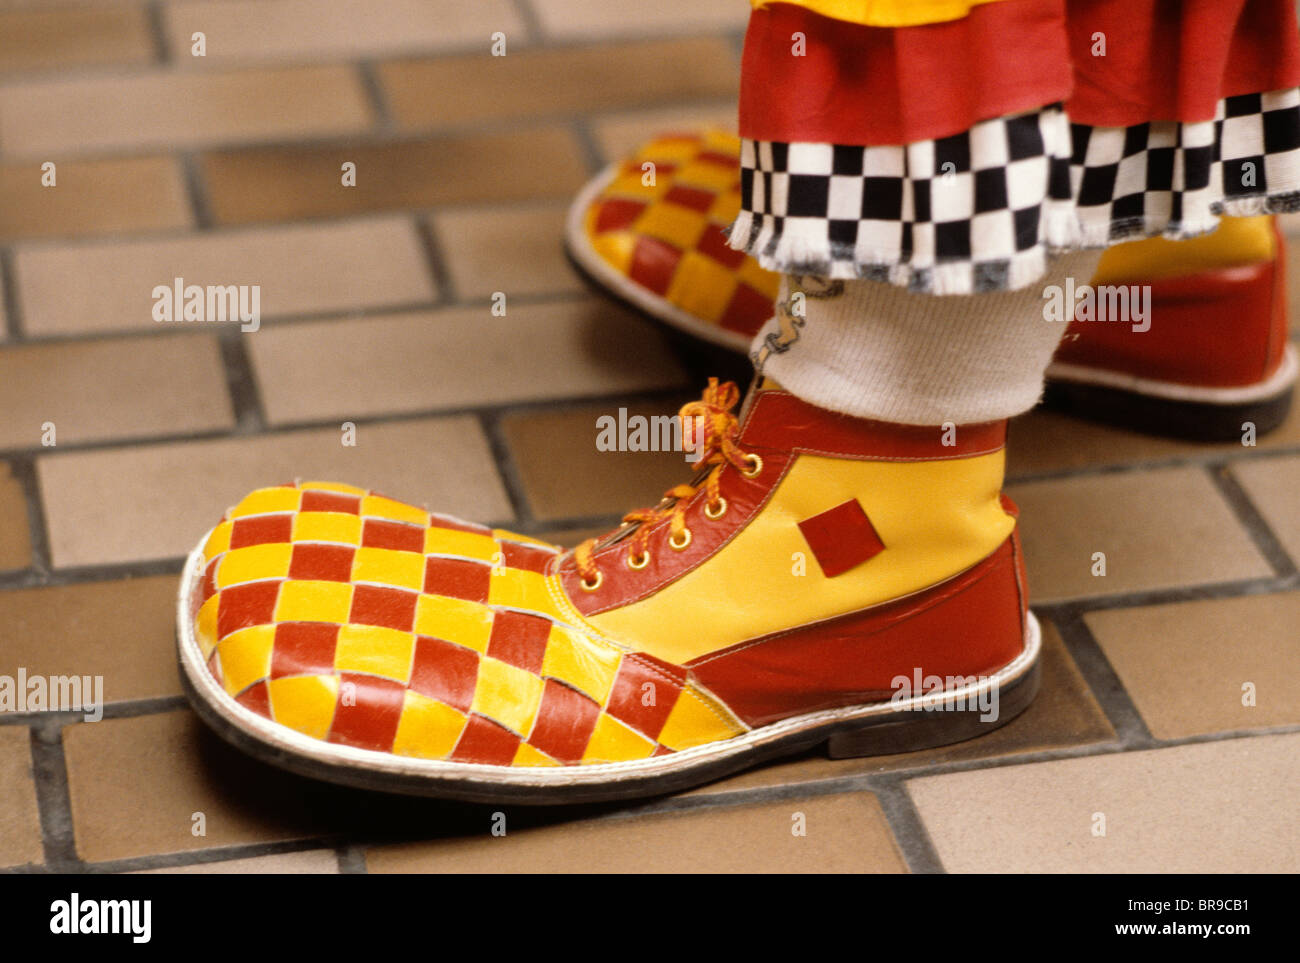 Zapatos del payaso foto de archivo. Imagen de zapatos, colores - 370030